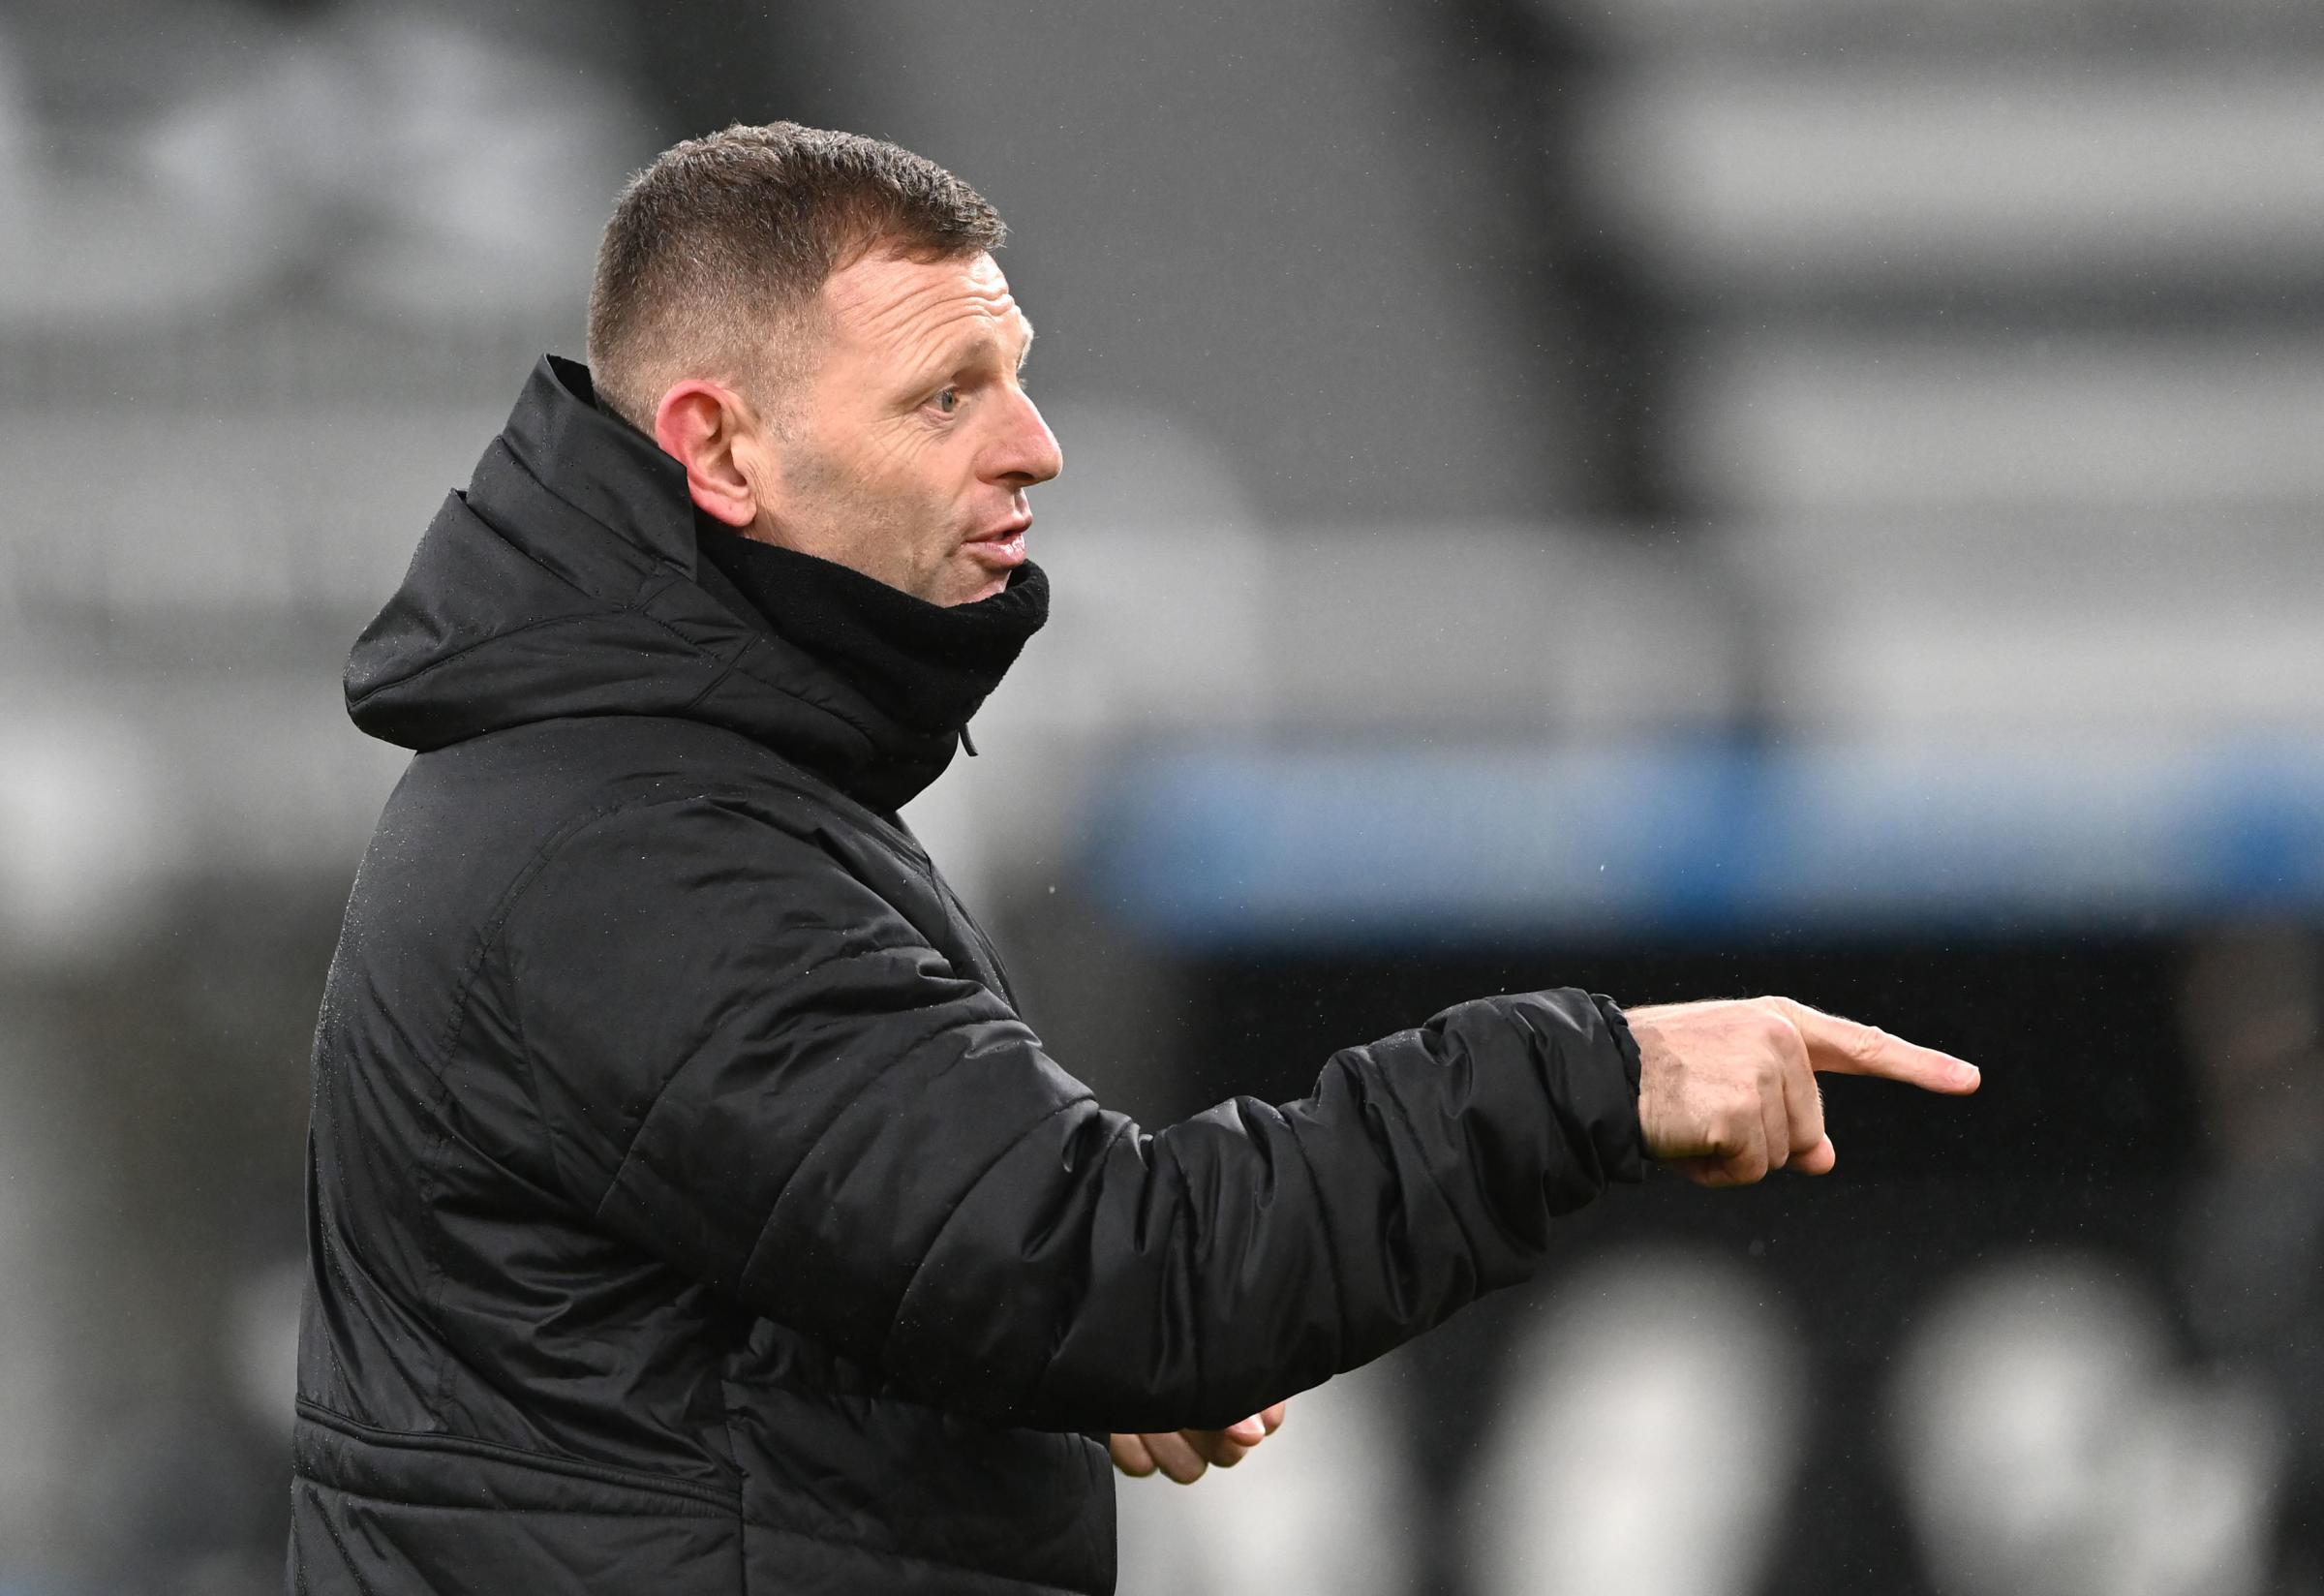 Brighton will face caretaker Newcastle boss Graeme Jones